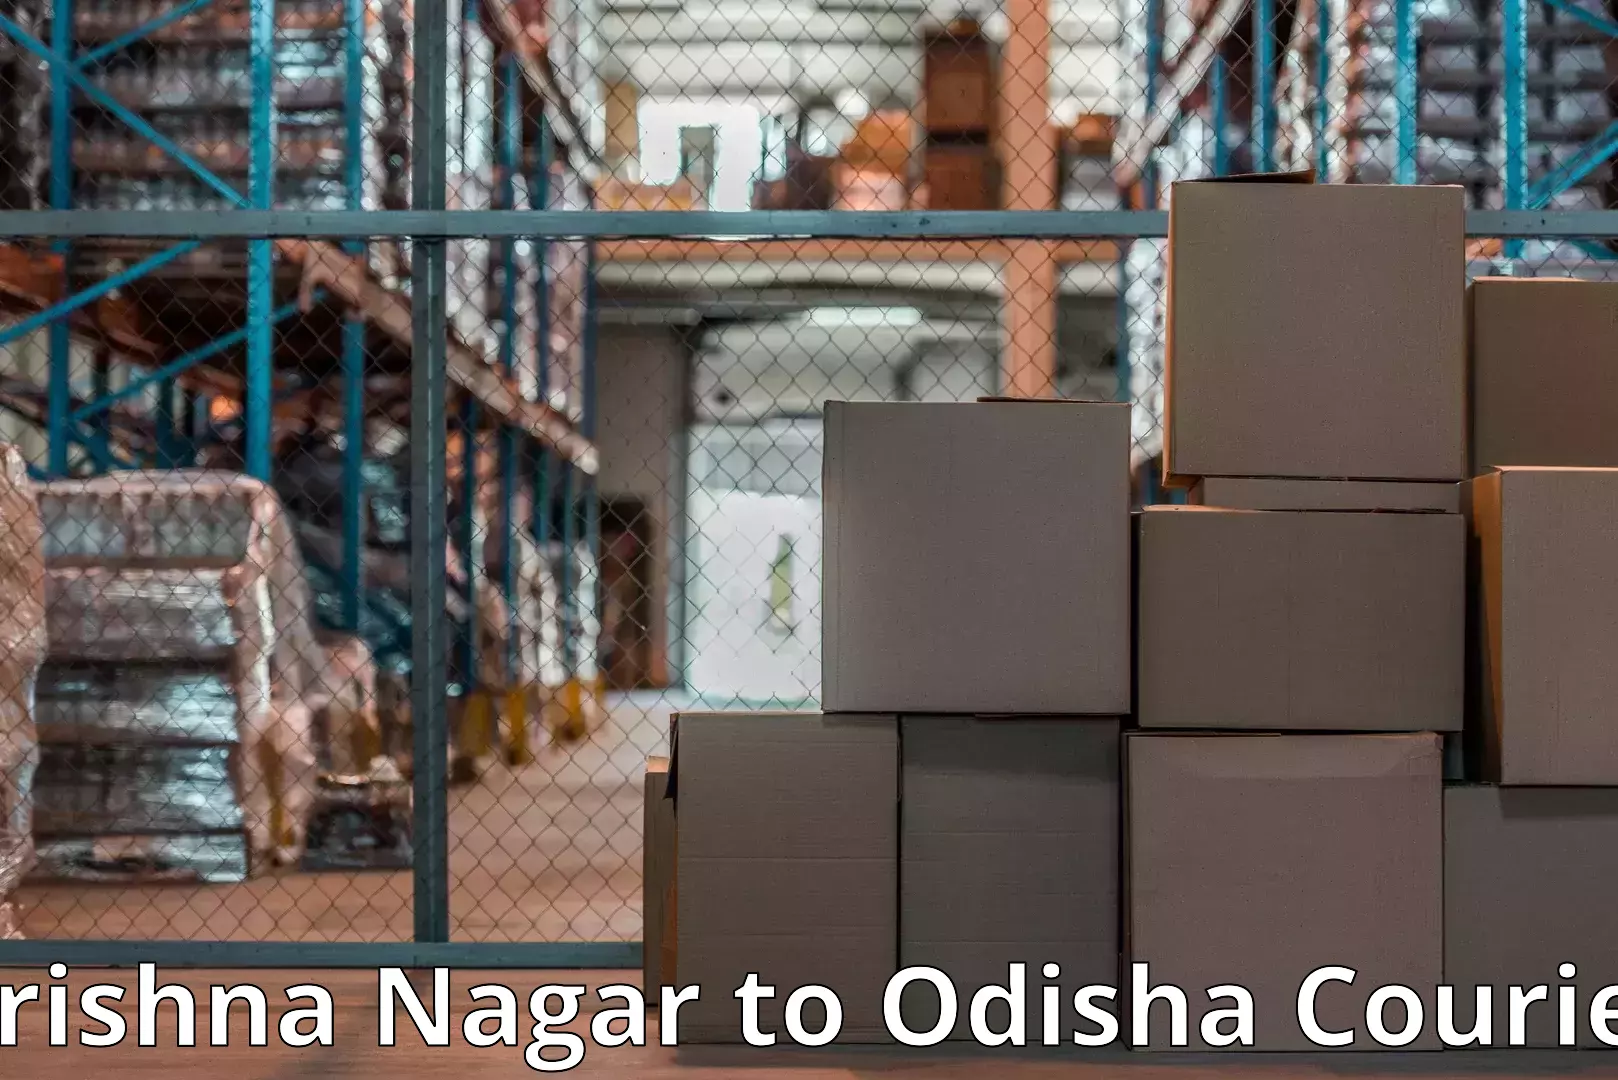 Furniture transport experts Krishna Nagar to Baleswar